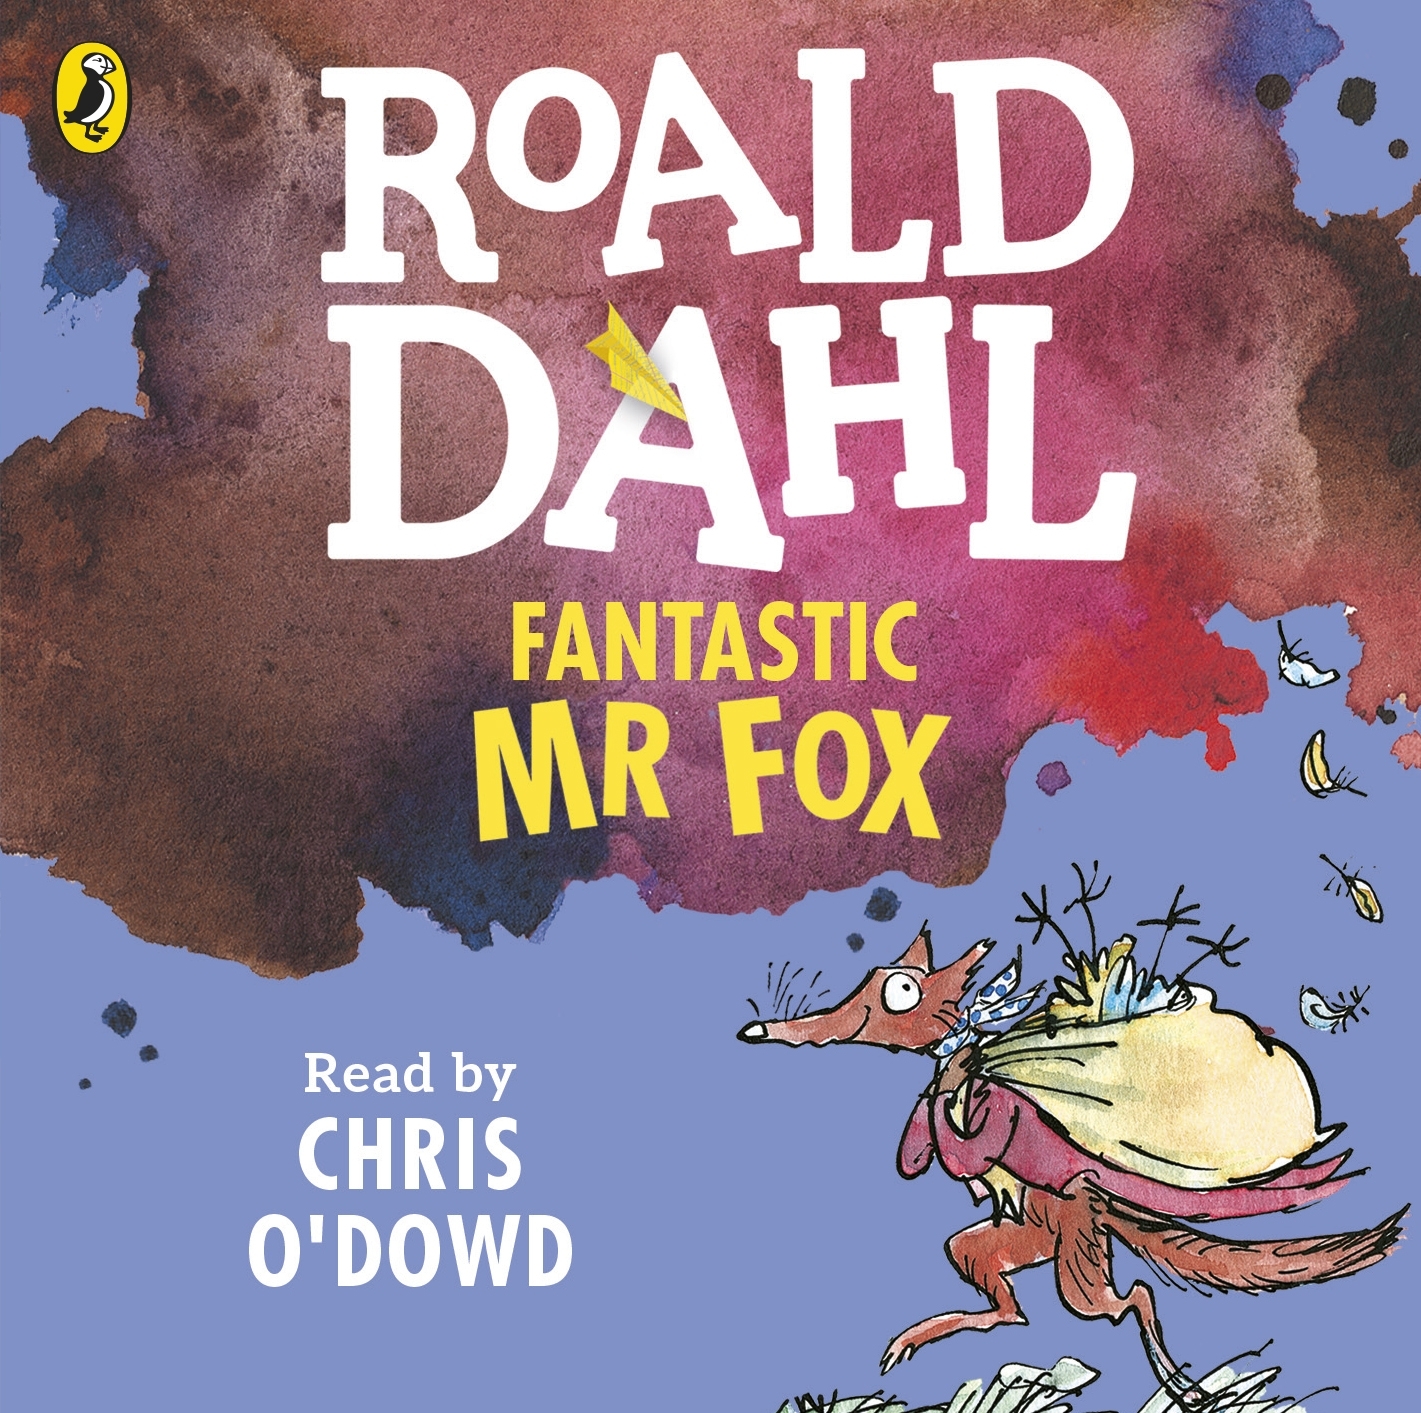 Fantastic Mr Fox By Roald Dahl Penguin Books Australia